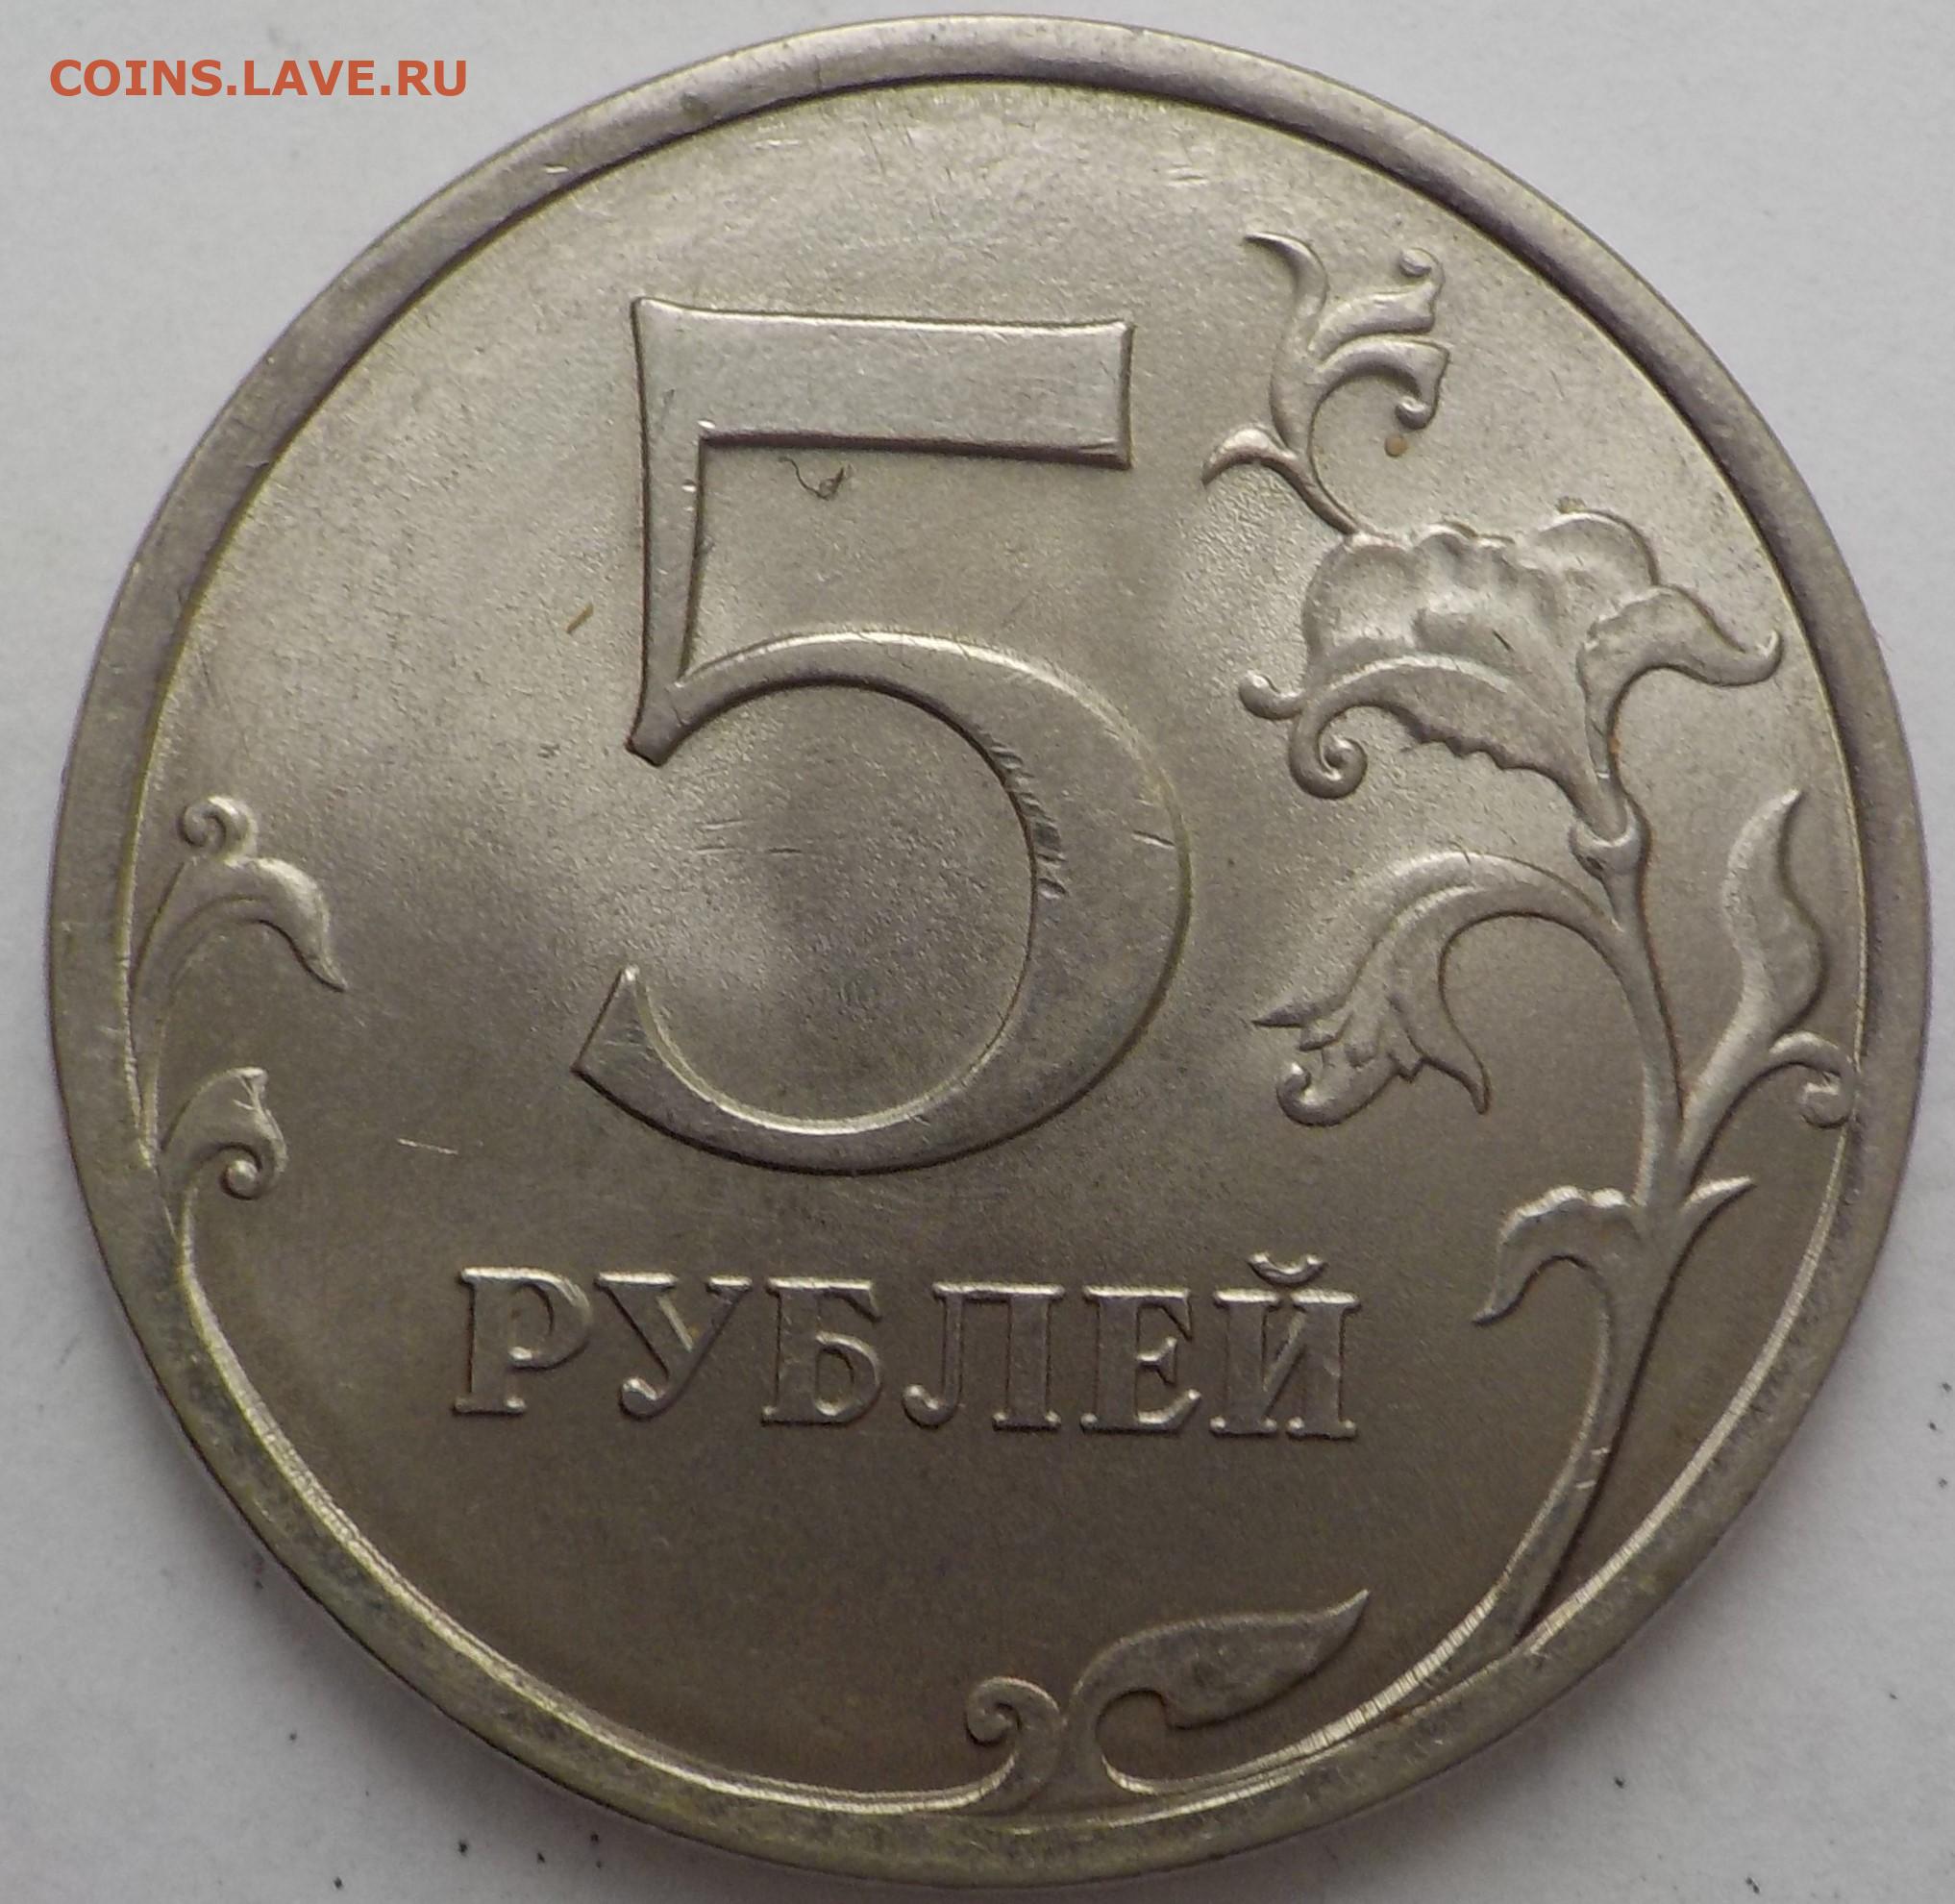 Самый маленький рубль в мире. Пять рублей. Размер 5 рублевой монеты. Размер 5 рублей. 5 Рублей картинка.